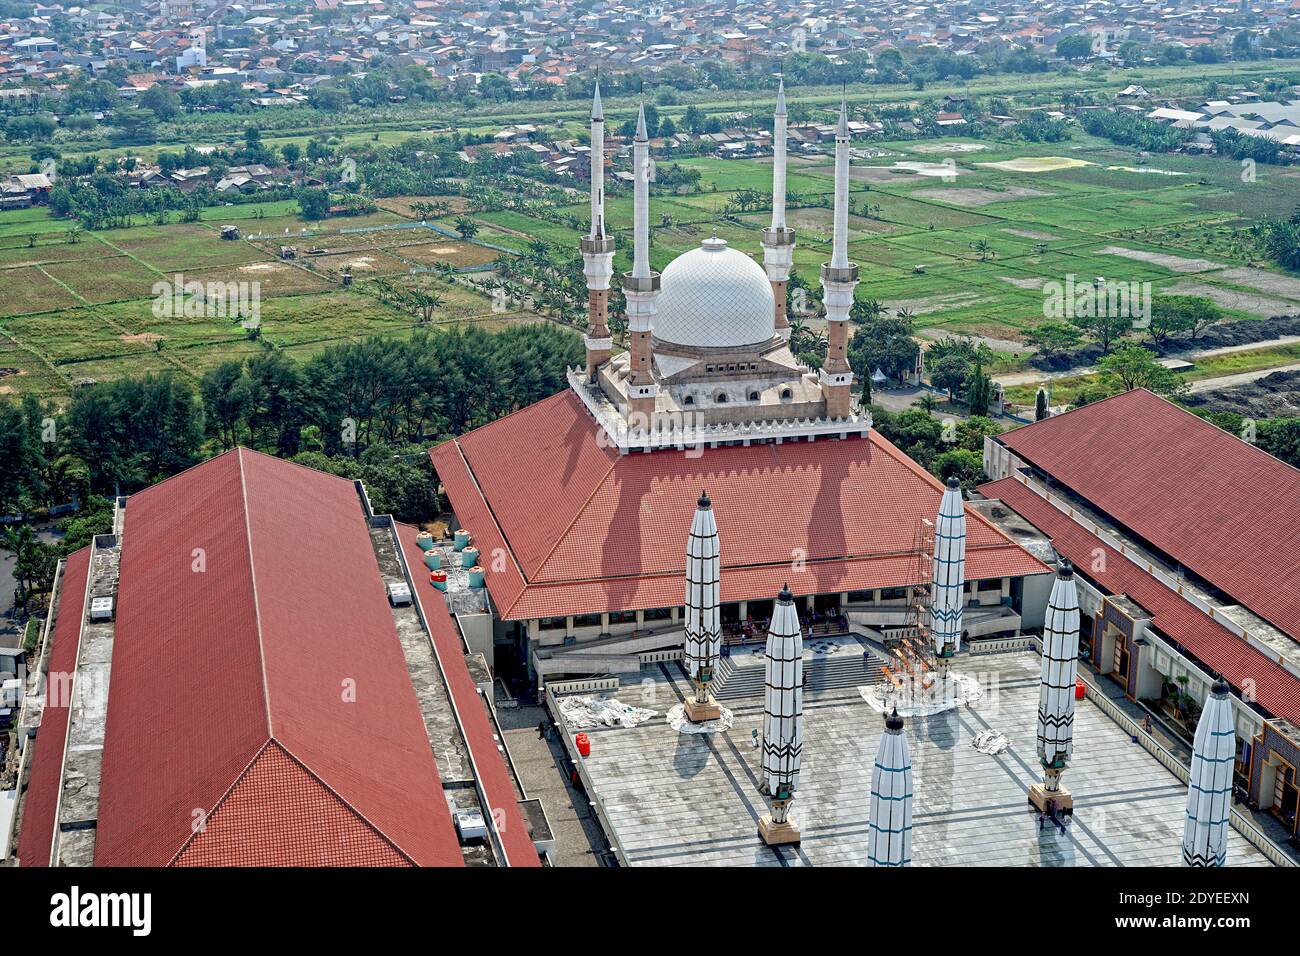 Masjid Agung Jawa Tengah Mosque, Semarang, Central Java, Indonesia Stock Photo